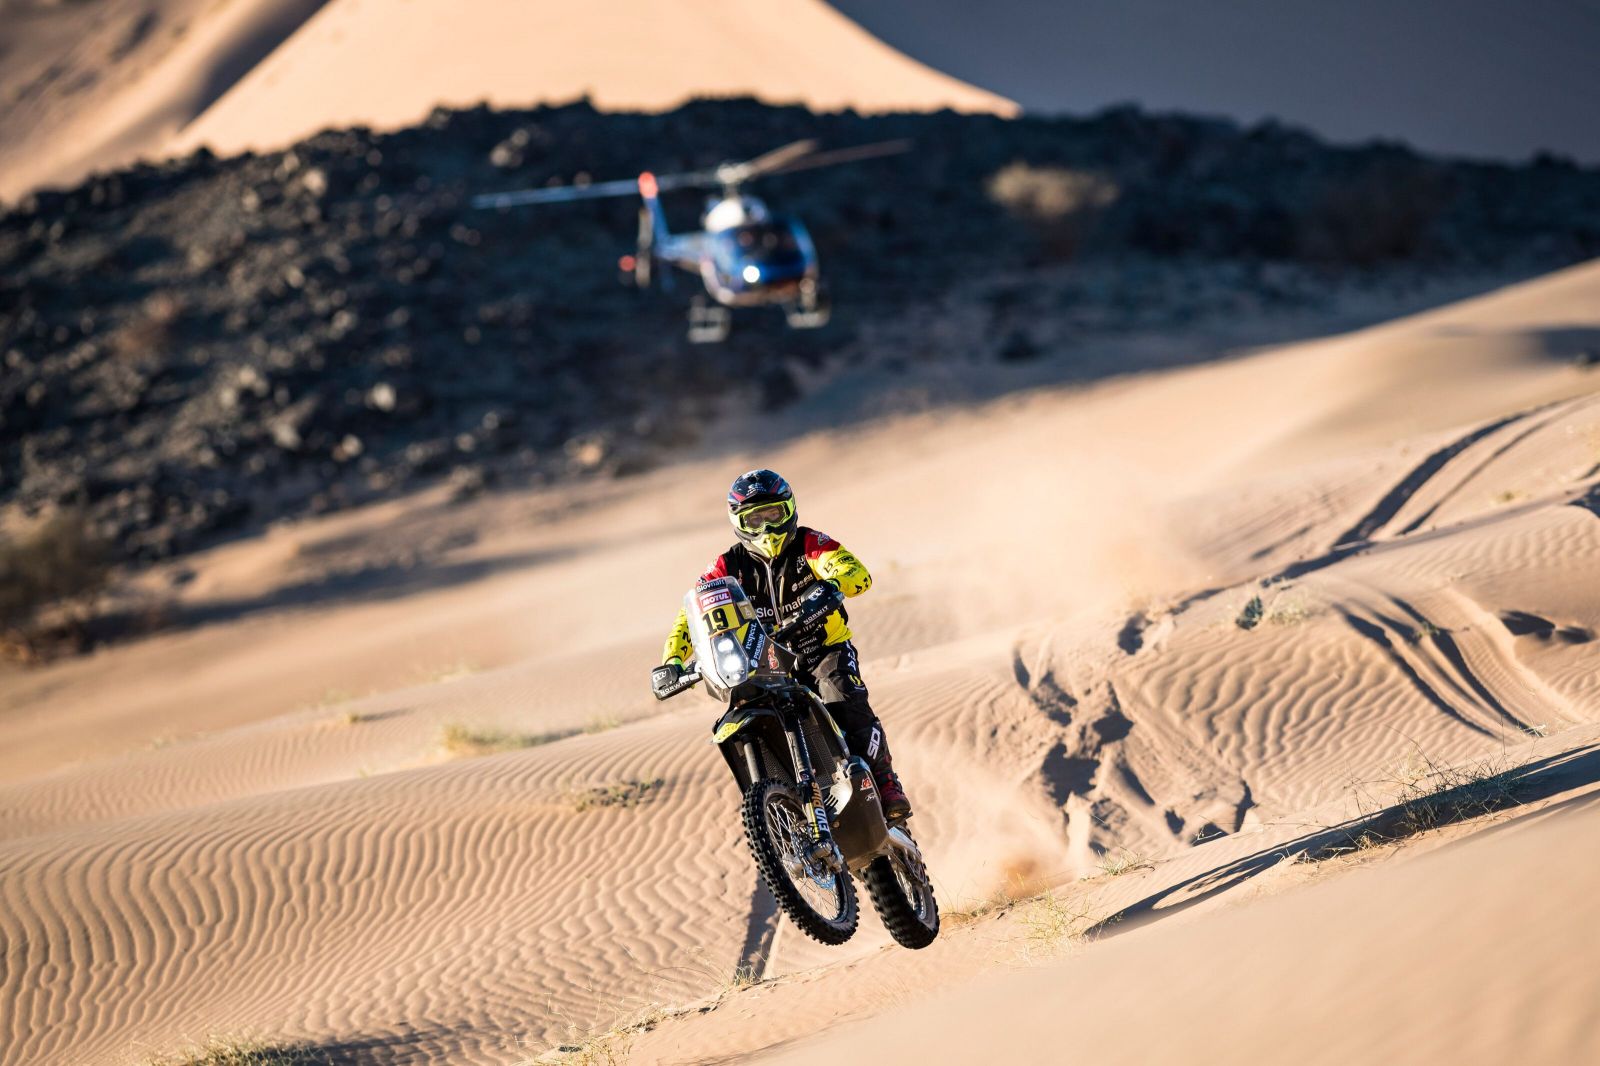 Sleduj Štefana Svitka naživo. Obháji na rally Dakar 2. miesto z roku 2016?